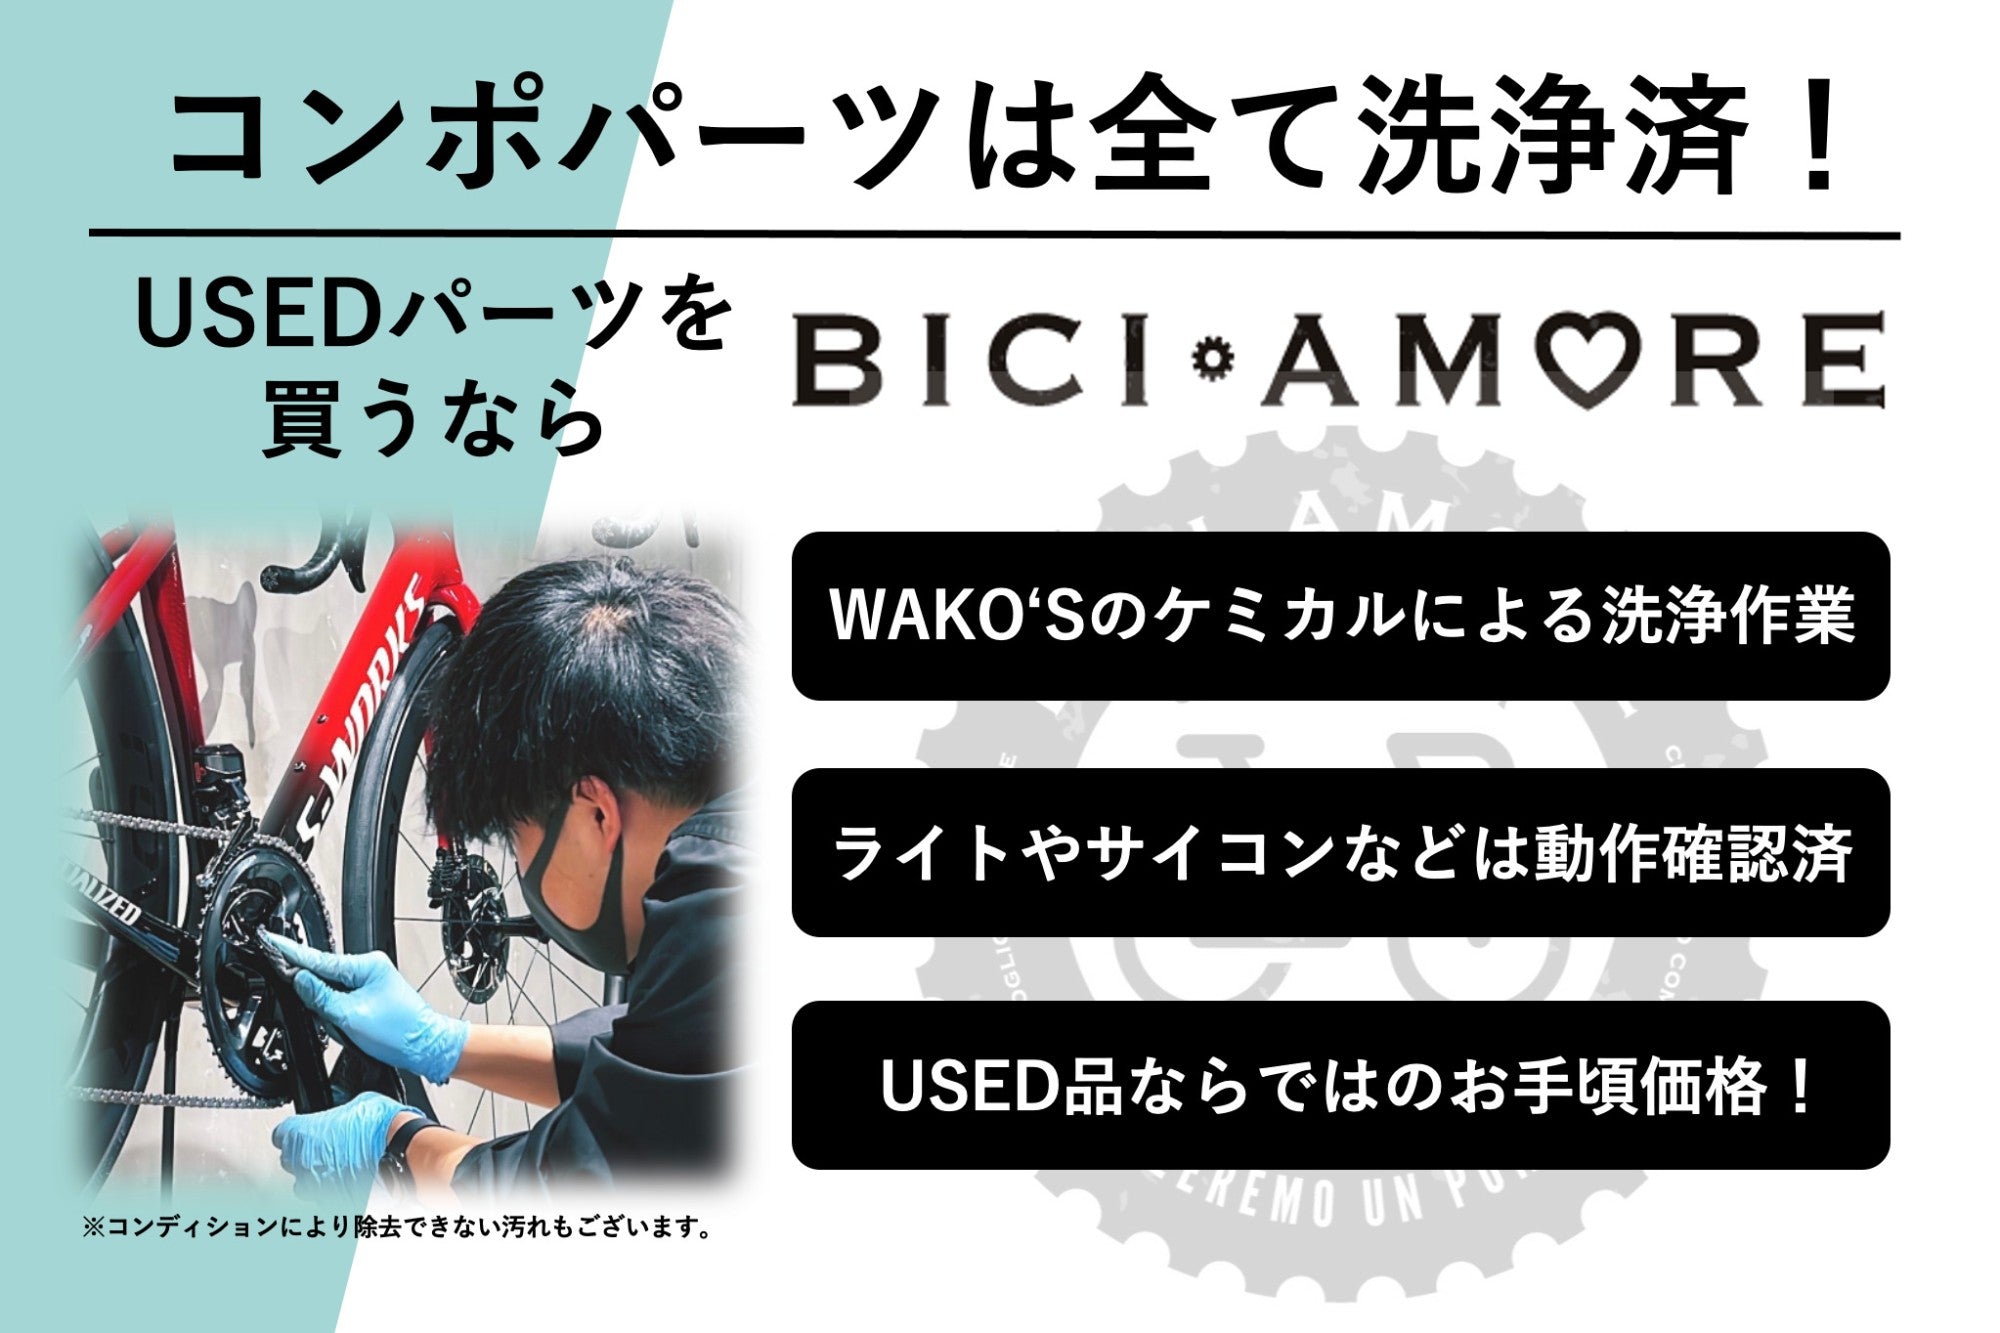 HD212 シマノ SHIMANO 105 ST-7020 油圧 STIレバー 右のみ 11s – BICI 